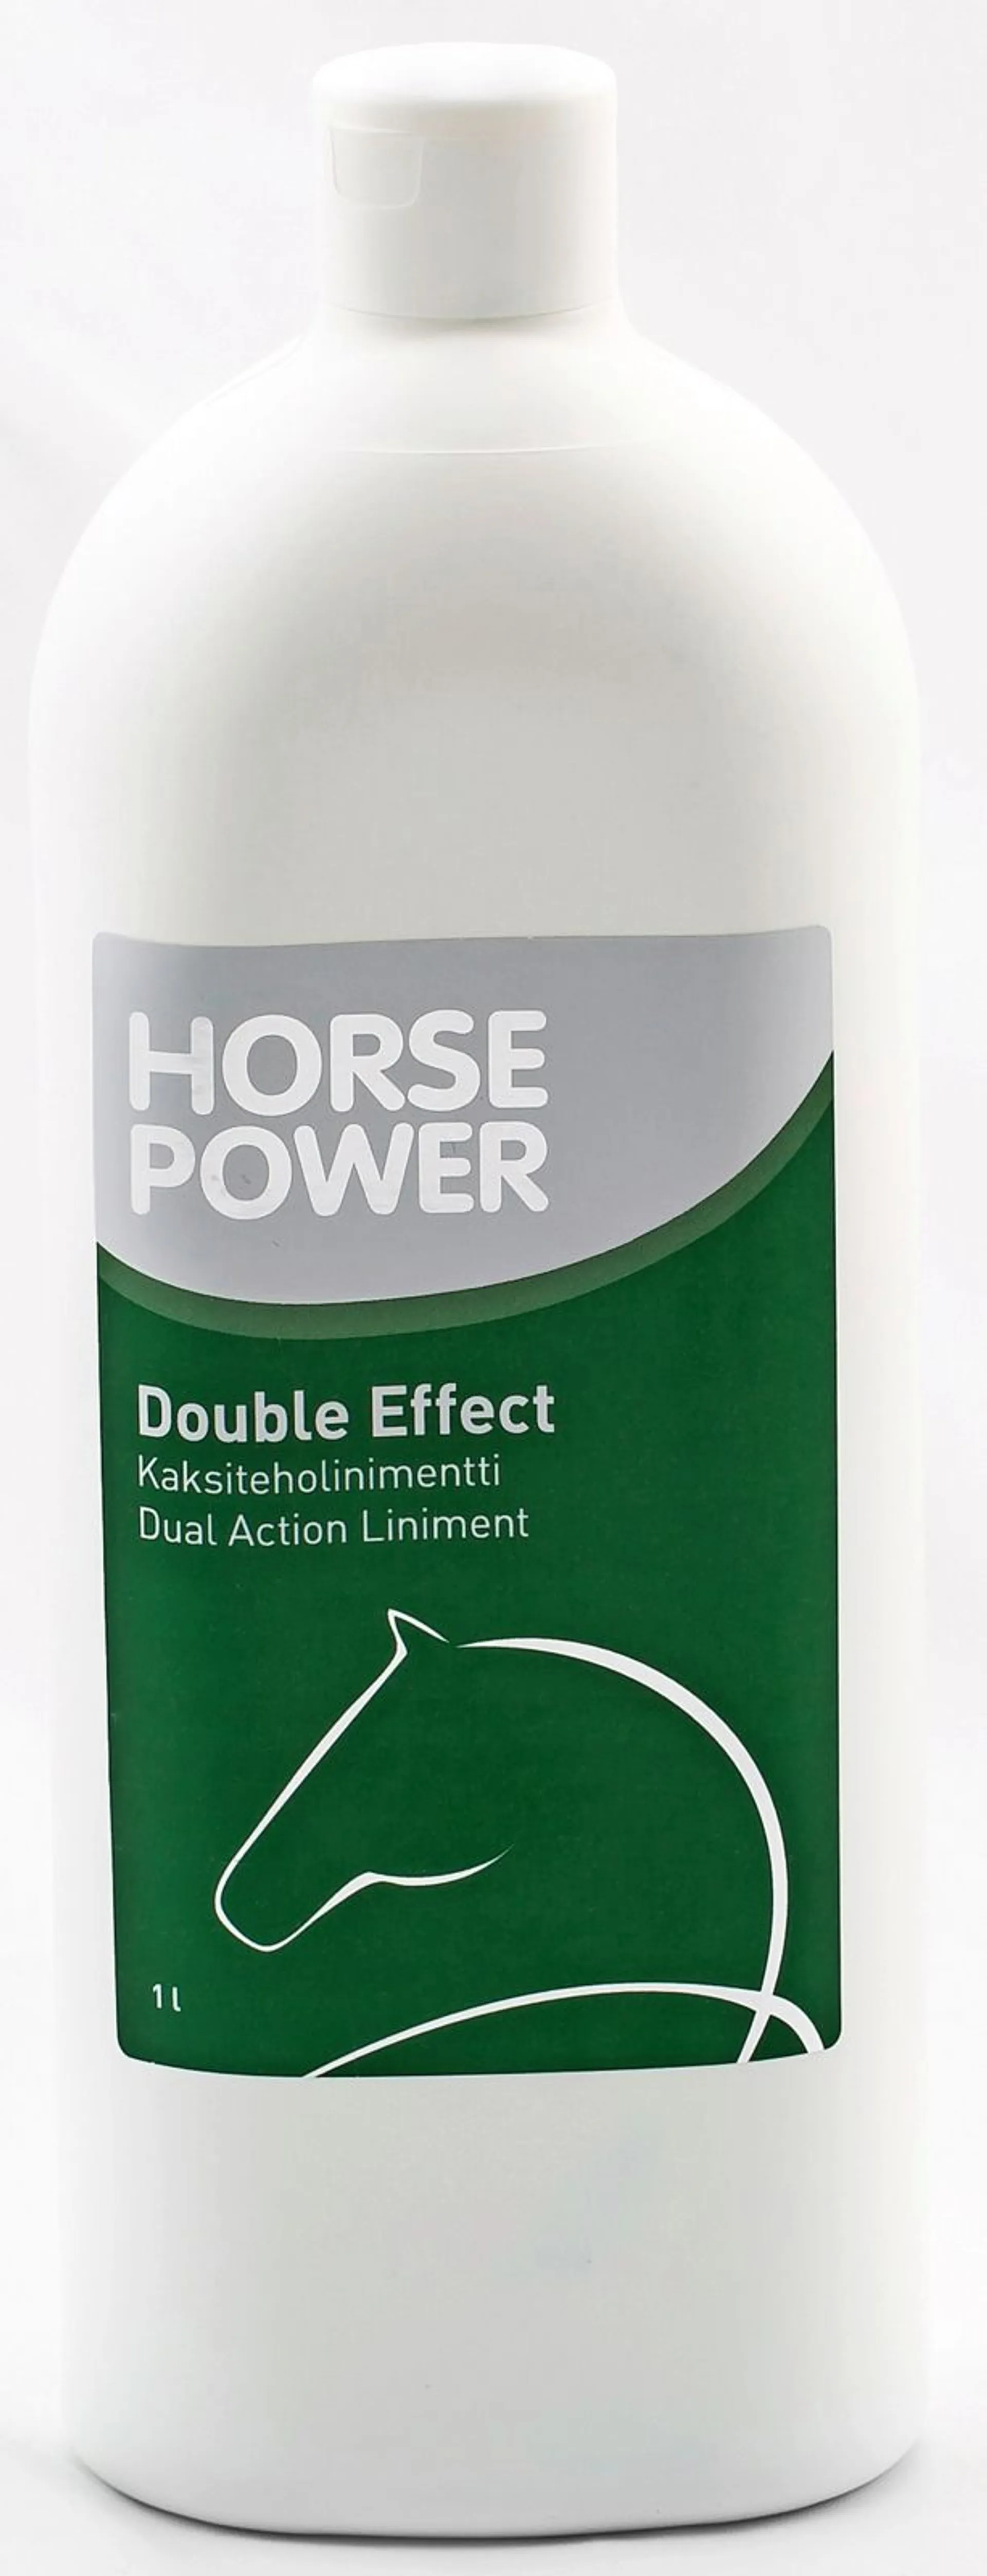 Horse Power kaksiteholinimentti 1 l